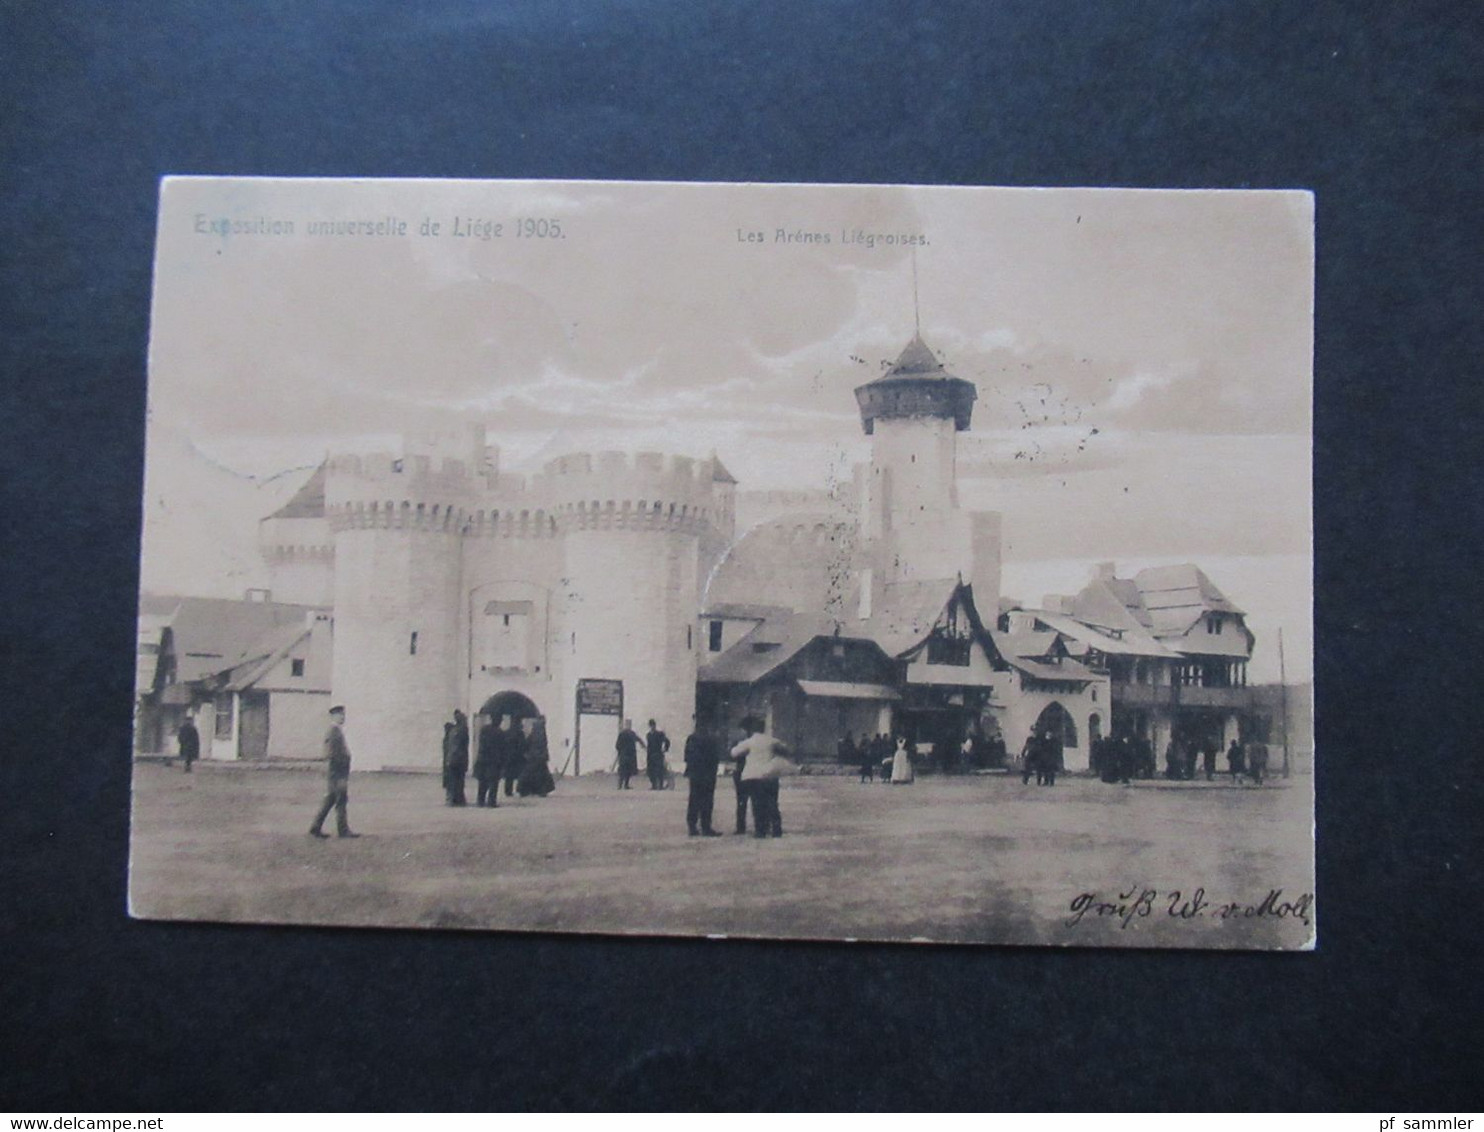 Belgien 1905 Exposition Universelle De Liege Les Arenes Liegeoises Weltausstellung Stempel Annevoie - Cöln - Exposiciones